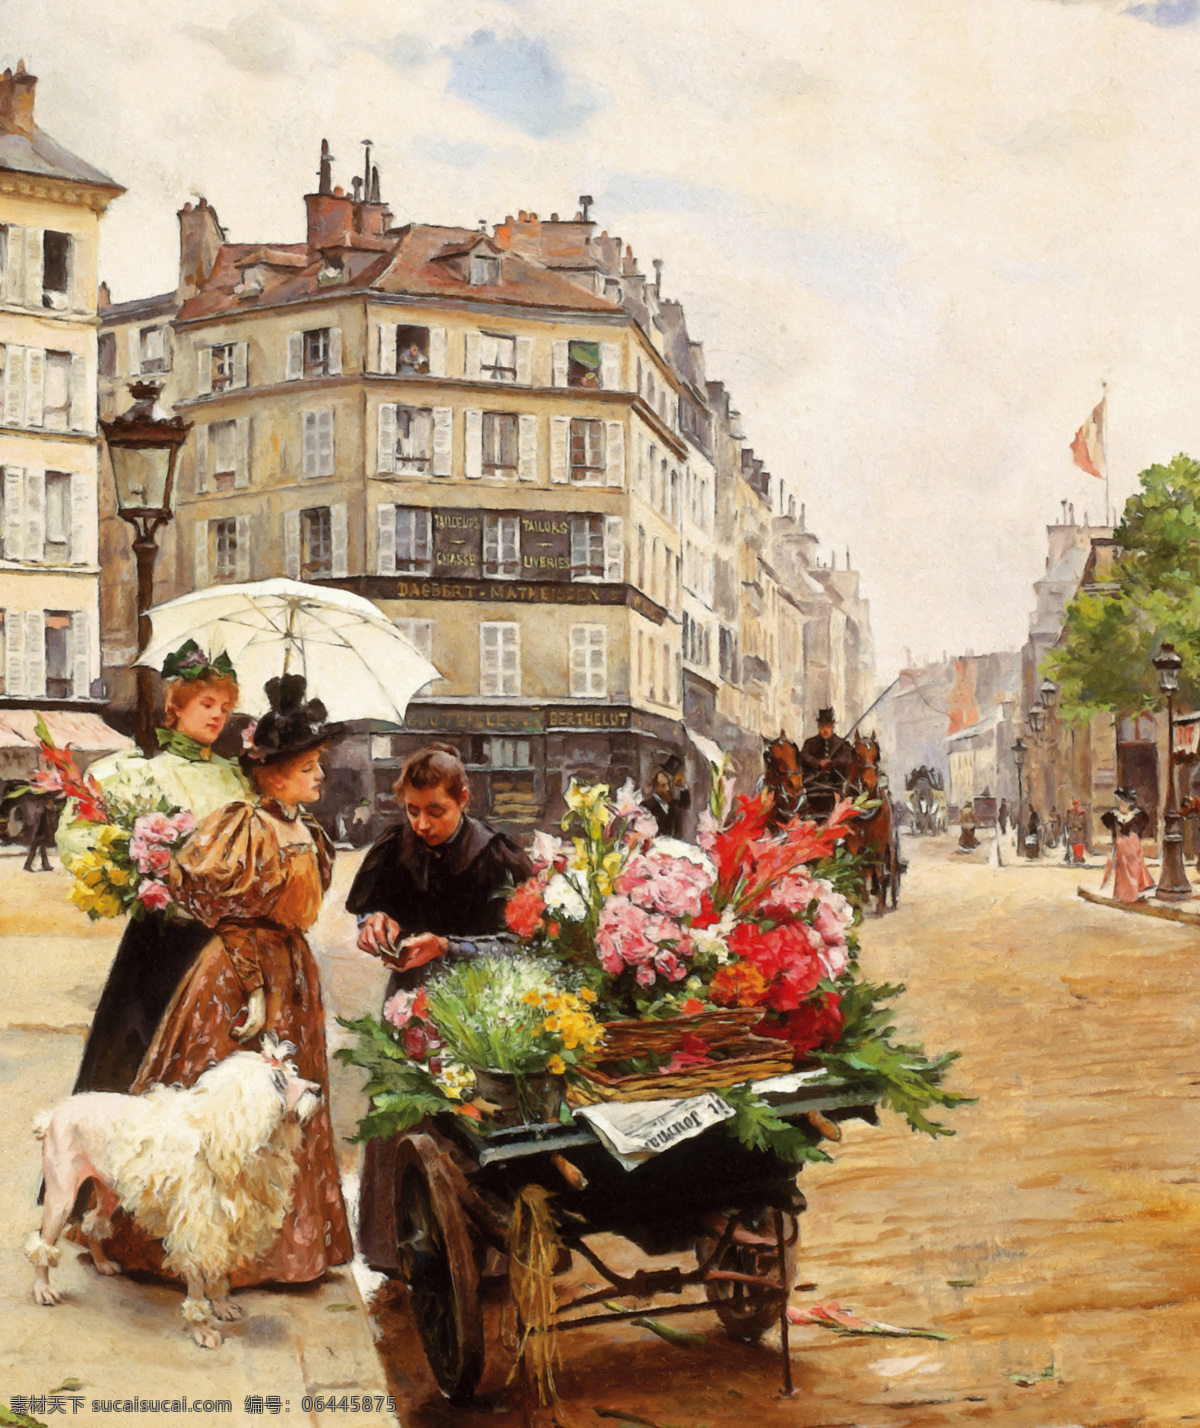 油画街头 油画 女人 街头 卖花女人 盛装妇人 贵妇人 狗 打洋伞的妇人 绘画书法 文化艺术